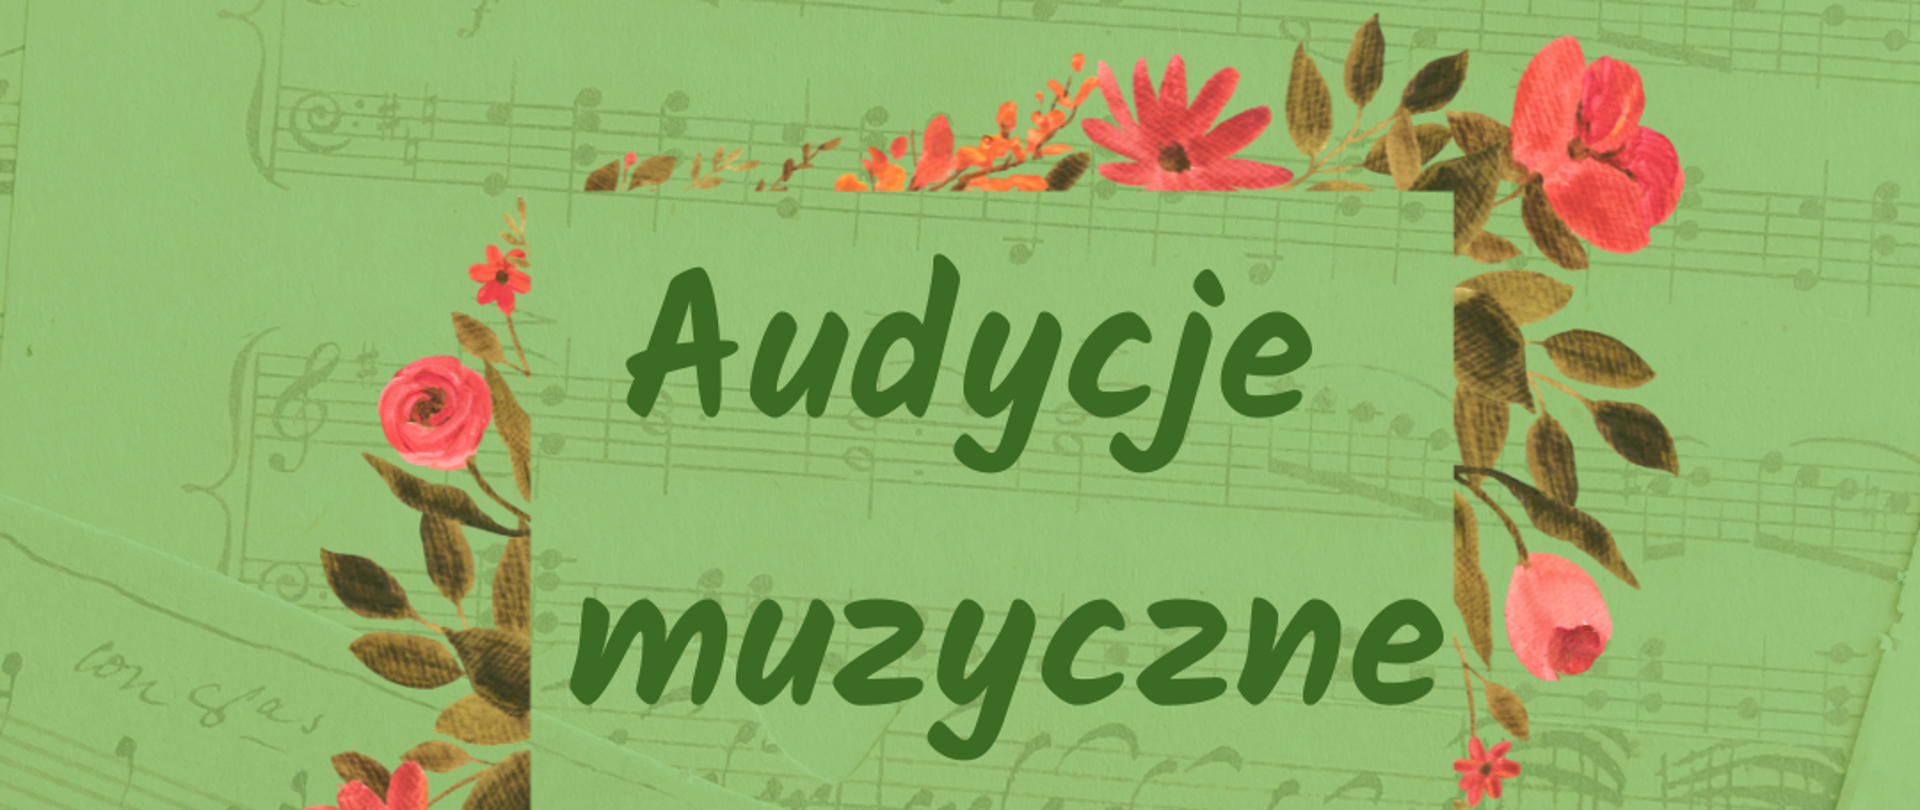 Plakat zaproszenie na Audycje muzyczne na zielonym tle z wiosennymi kwiatami